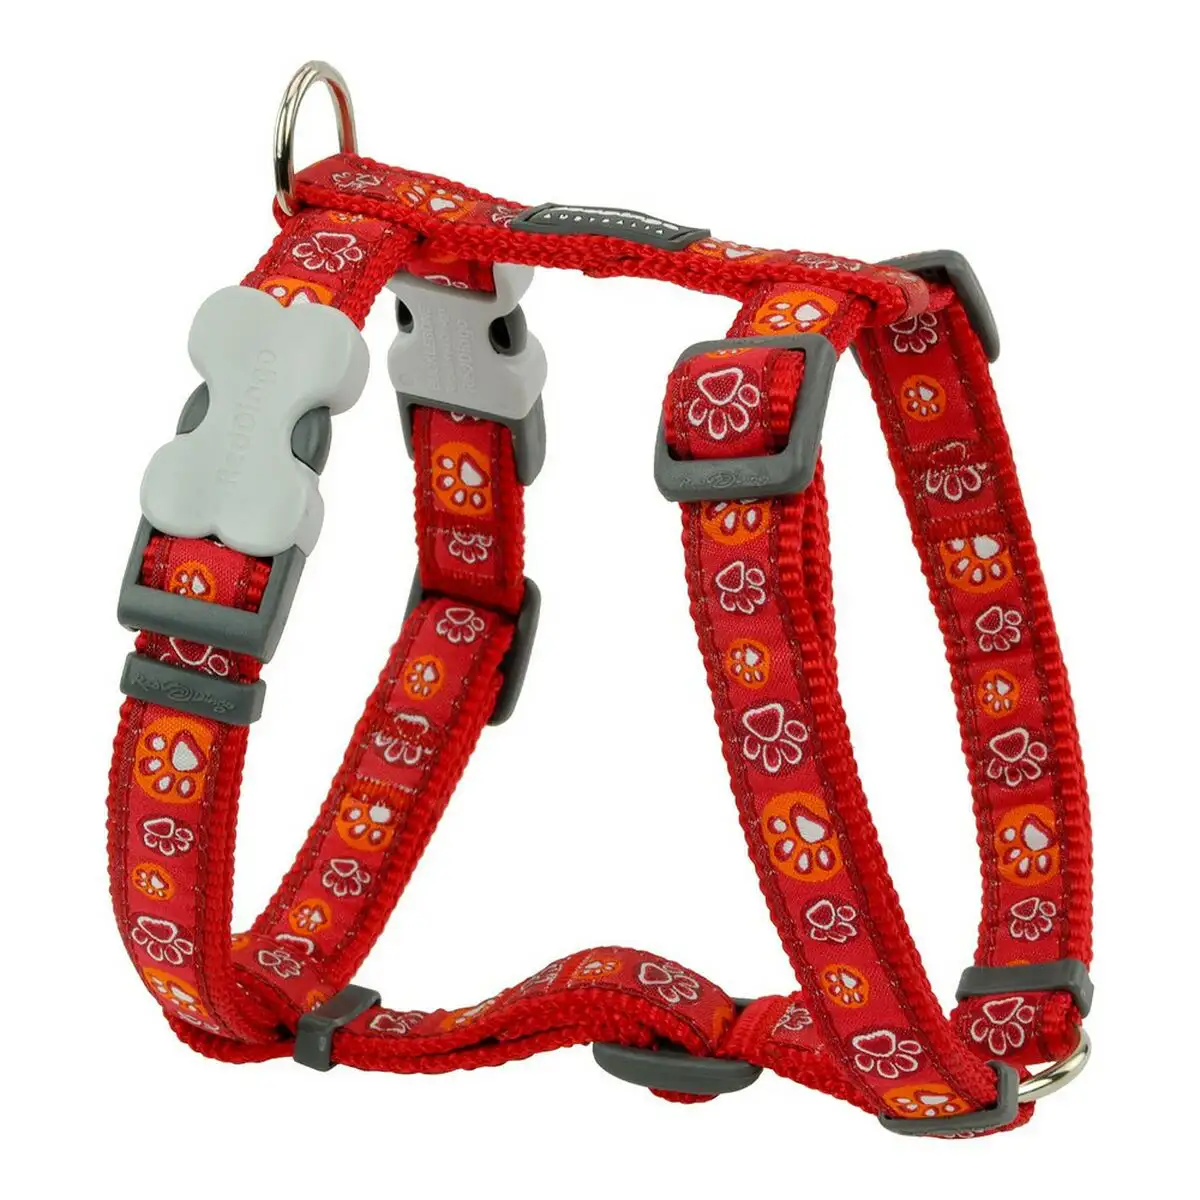 Harnais pour chien red dingo style rouge empreinte des animaux 30 48 cm_8804. DIAYTAR SENEGAL - L'Artisanat à Portée de Clic. Découvrez notre boutique en ligne pour trouver des produits uniques qui célèbrent la créativité et l'artisanat sénégalais.